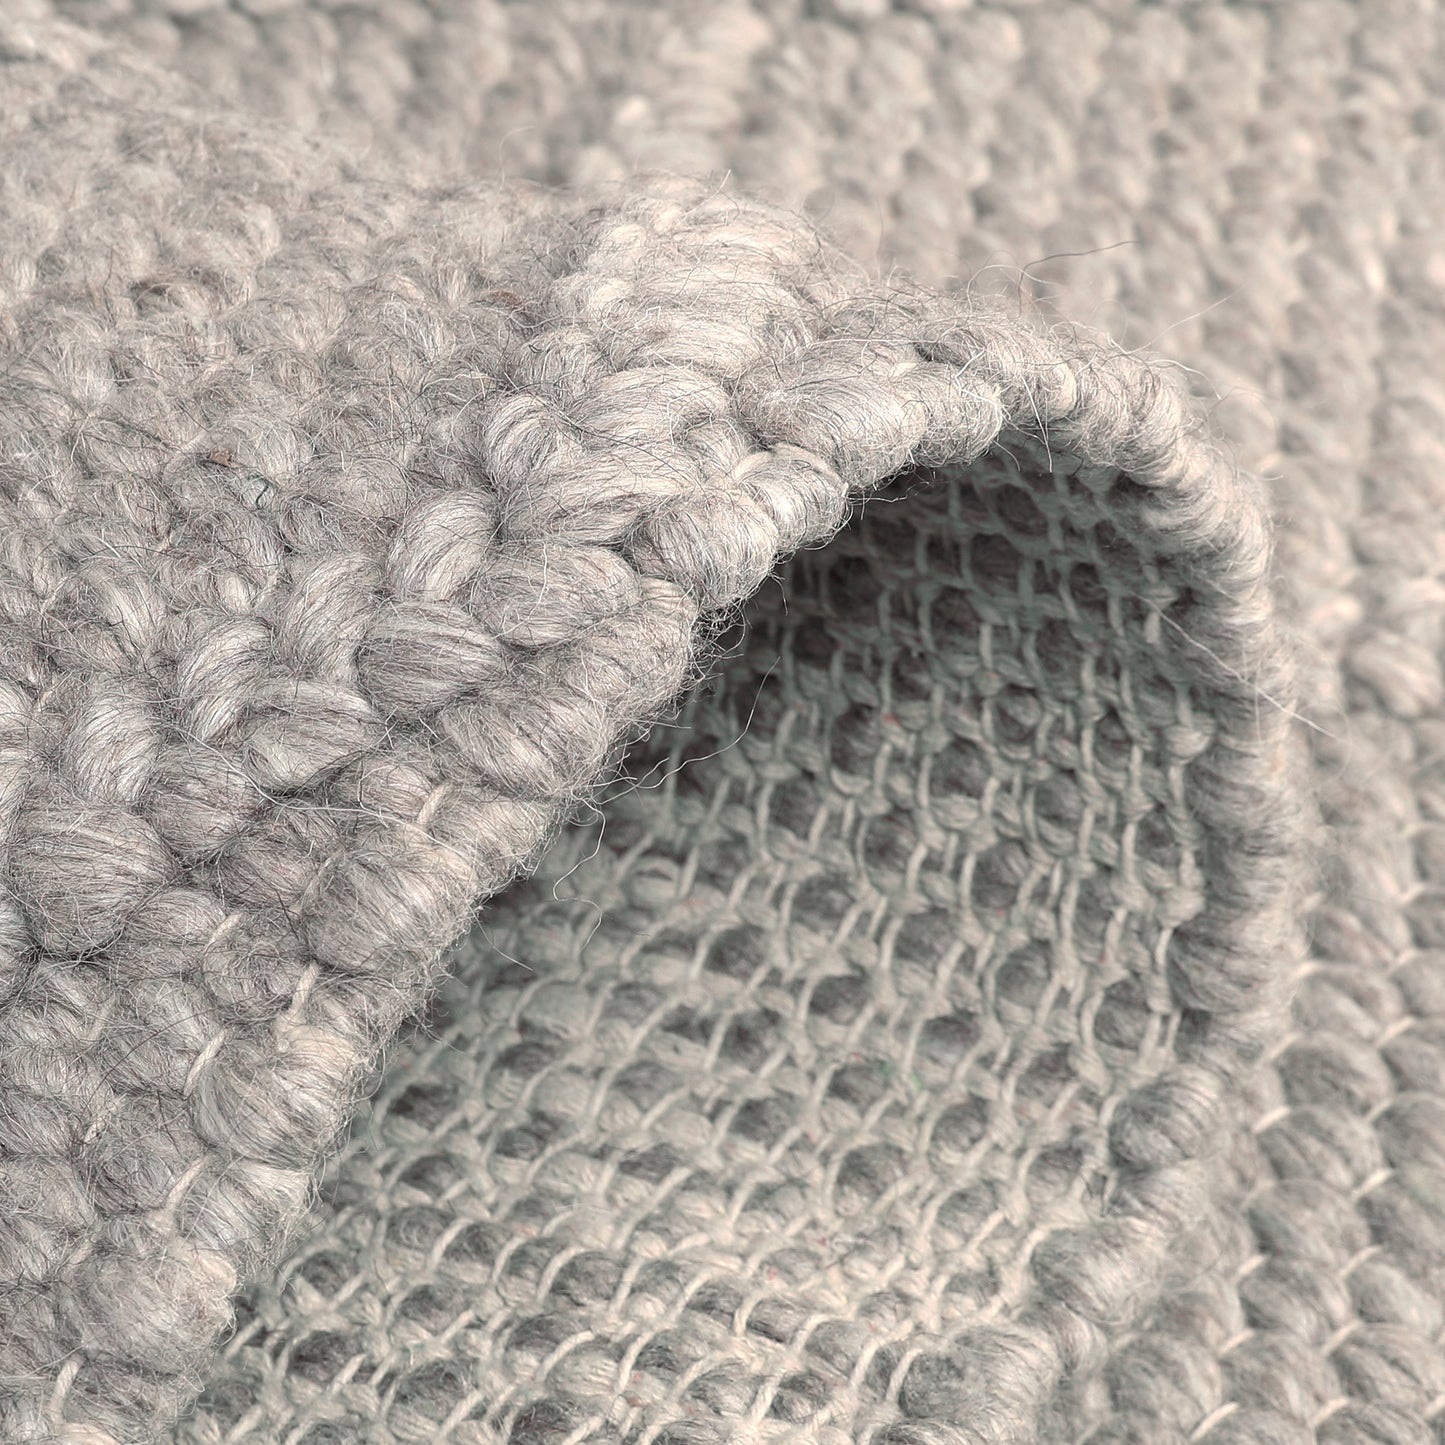 Hand Woven Wool Area Rug Footmat Doormat Woven Brown Long Harlequin 1204